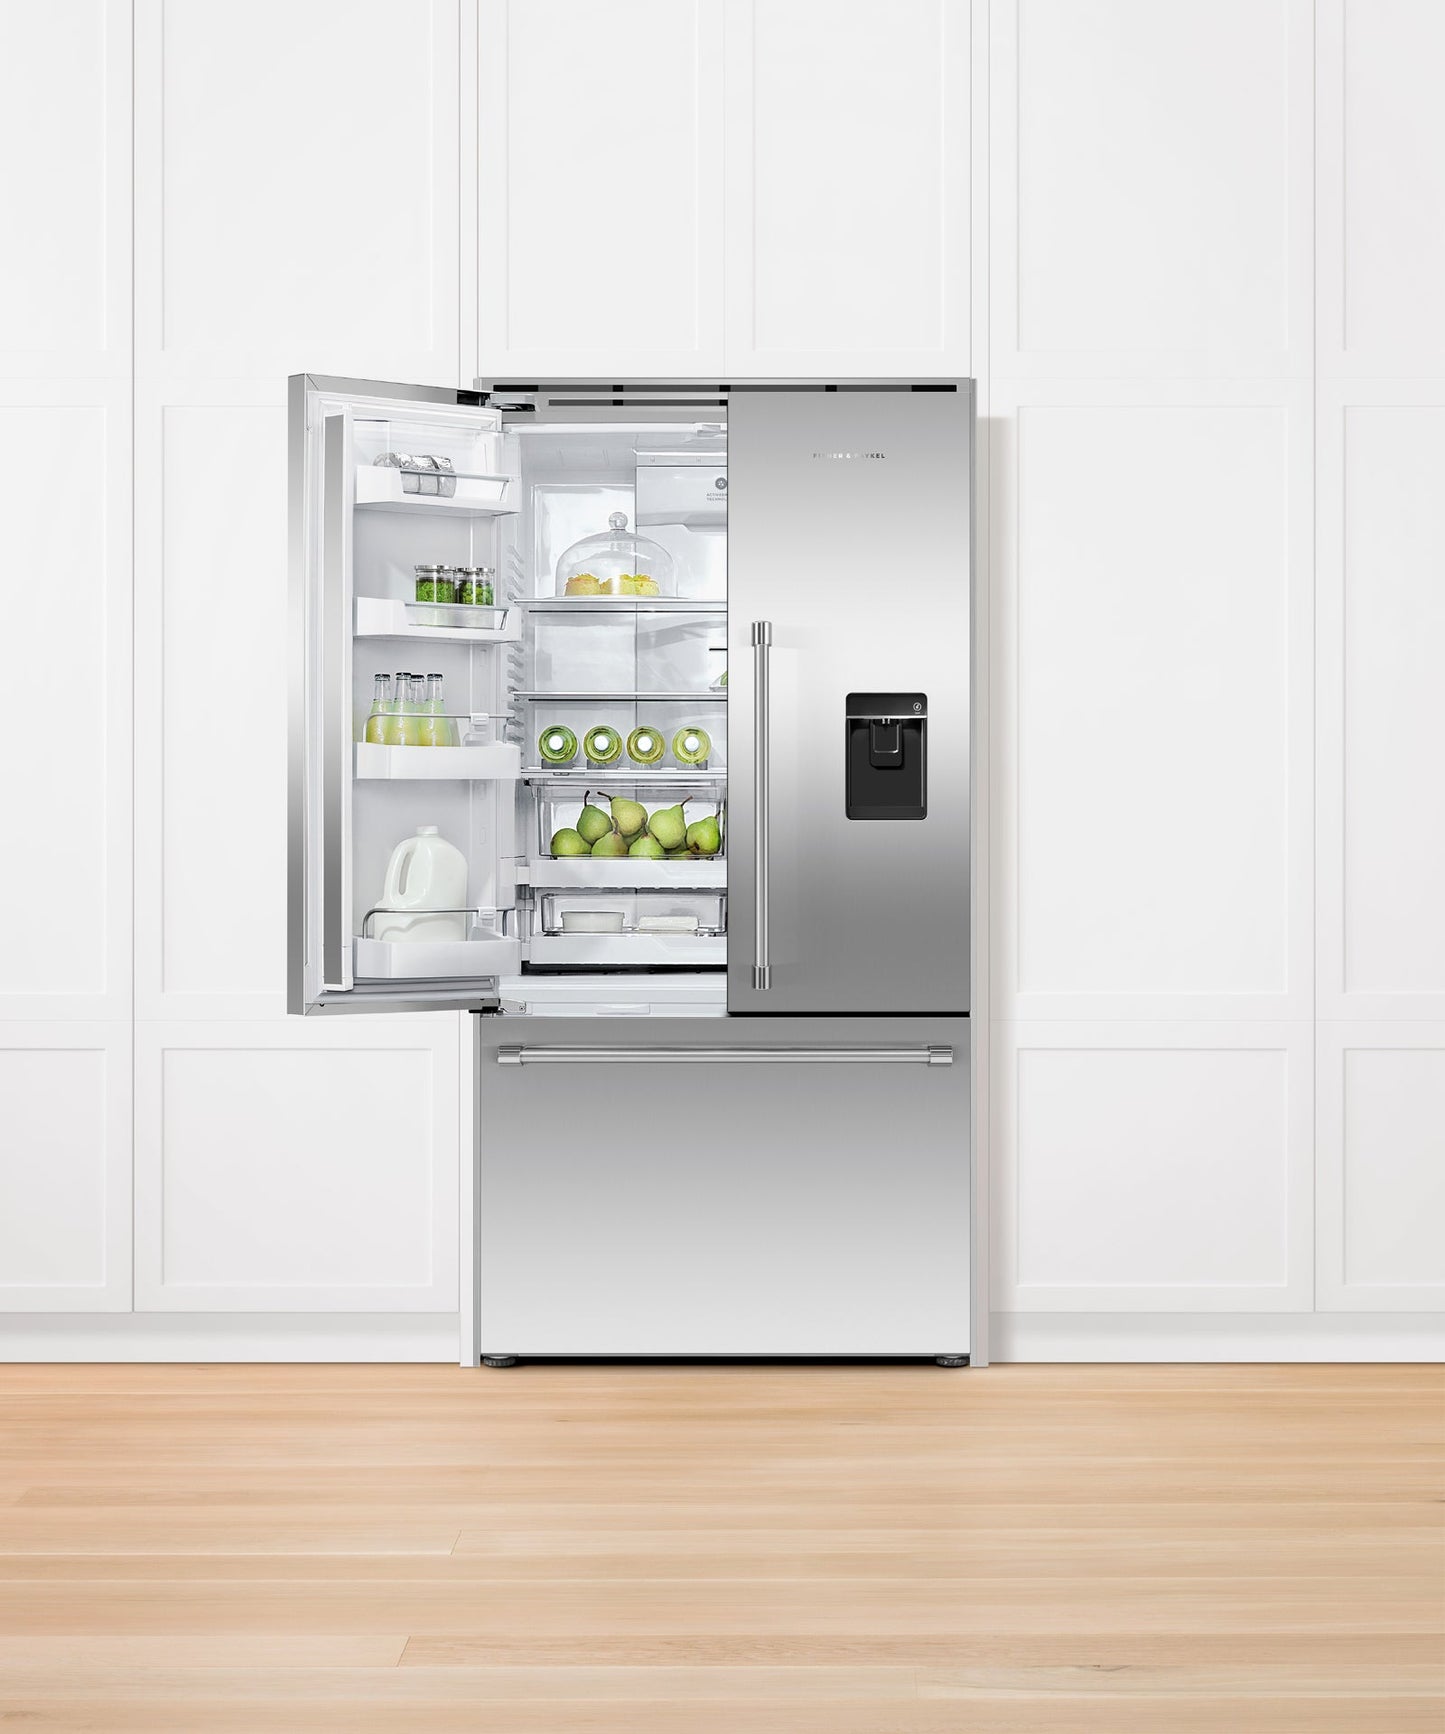 Freestanding French Door Refrigerator Freezer, 36", 20.1 cu ft, Ice & Water, pdp